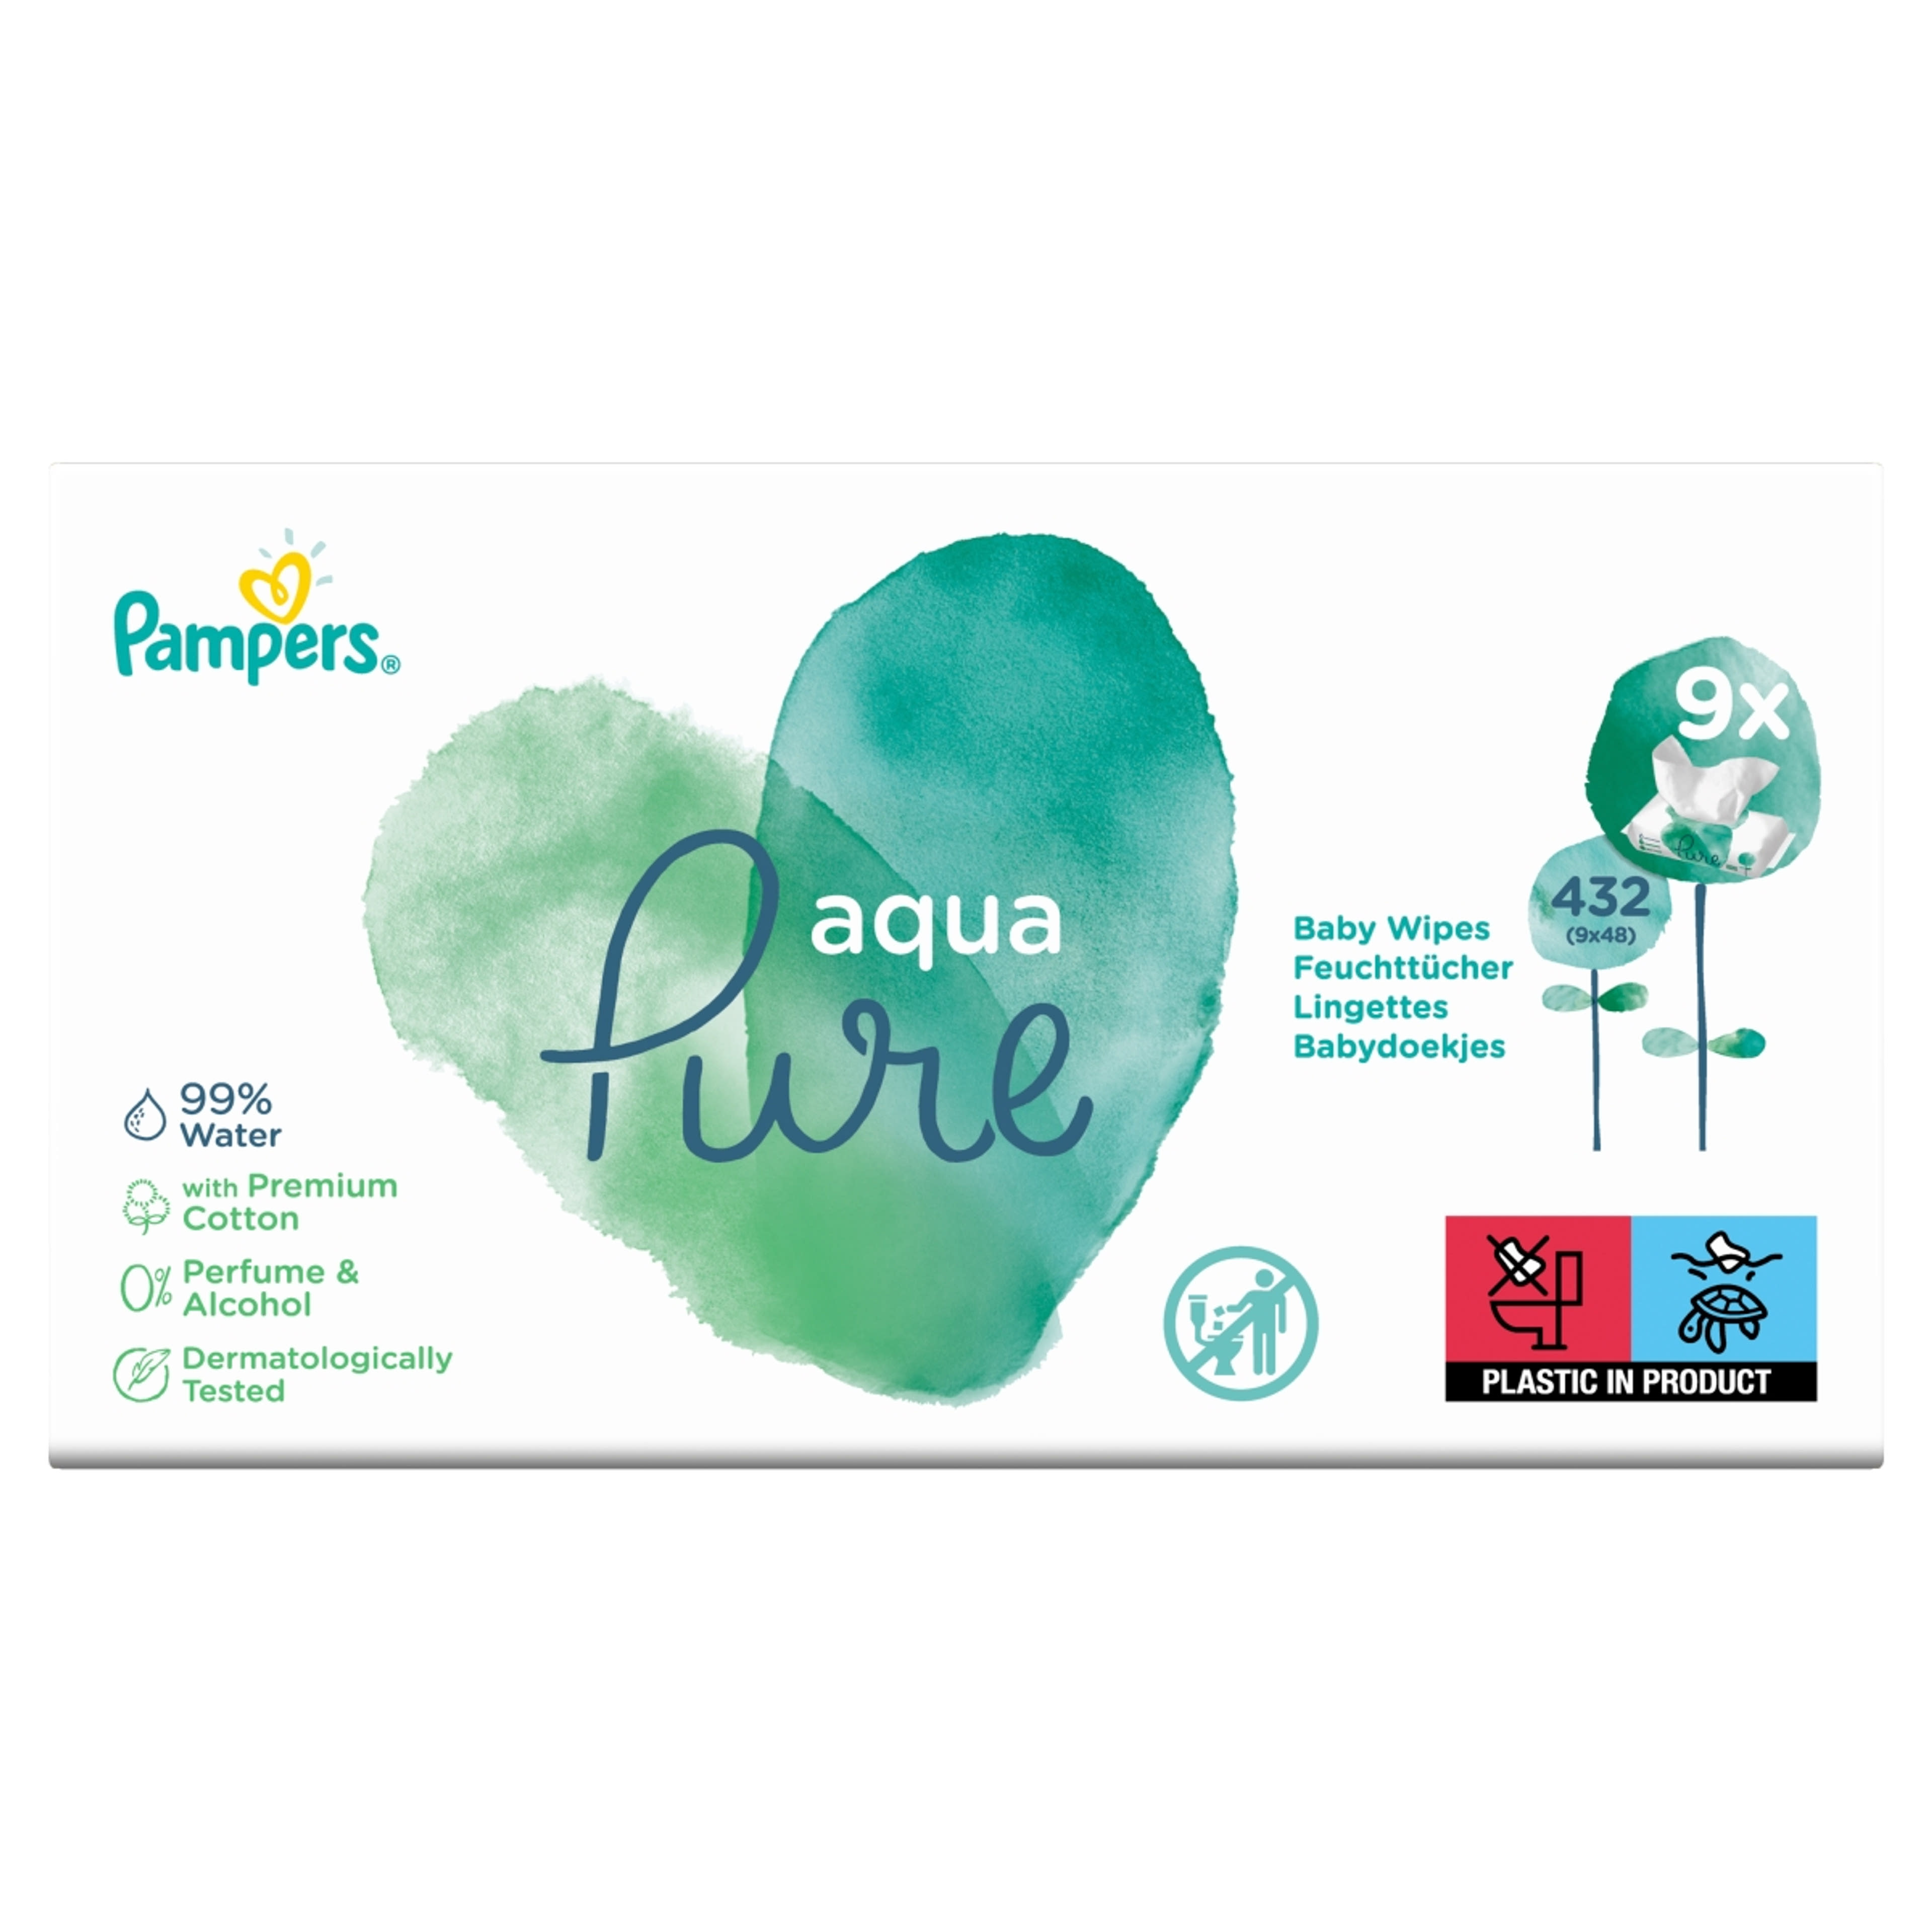 Pampers Aqua Pure törlőkendő (9*48) - 432 db-1